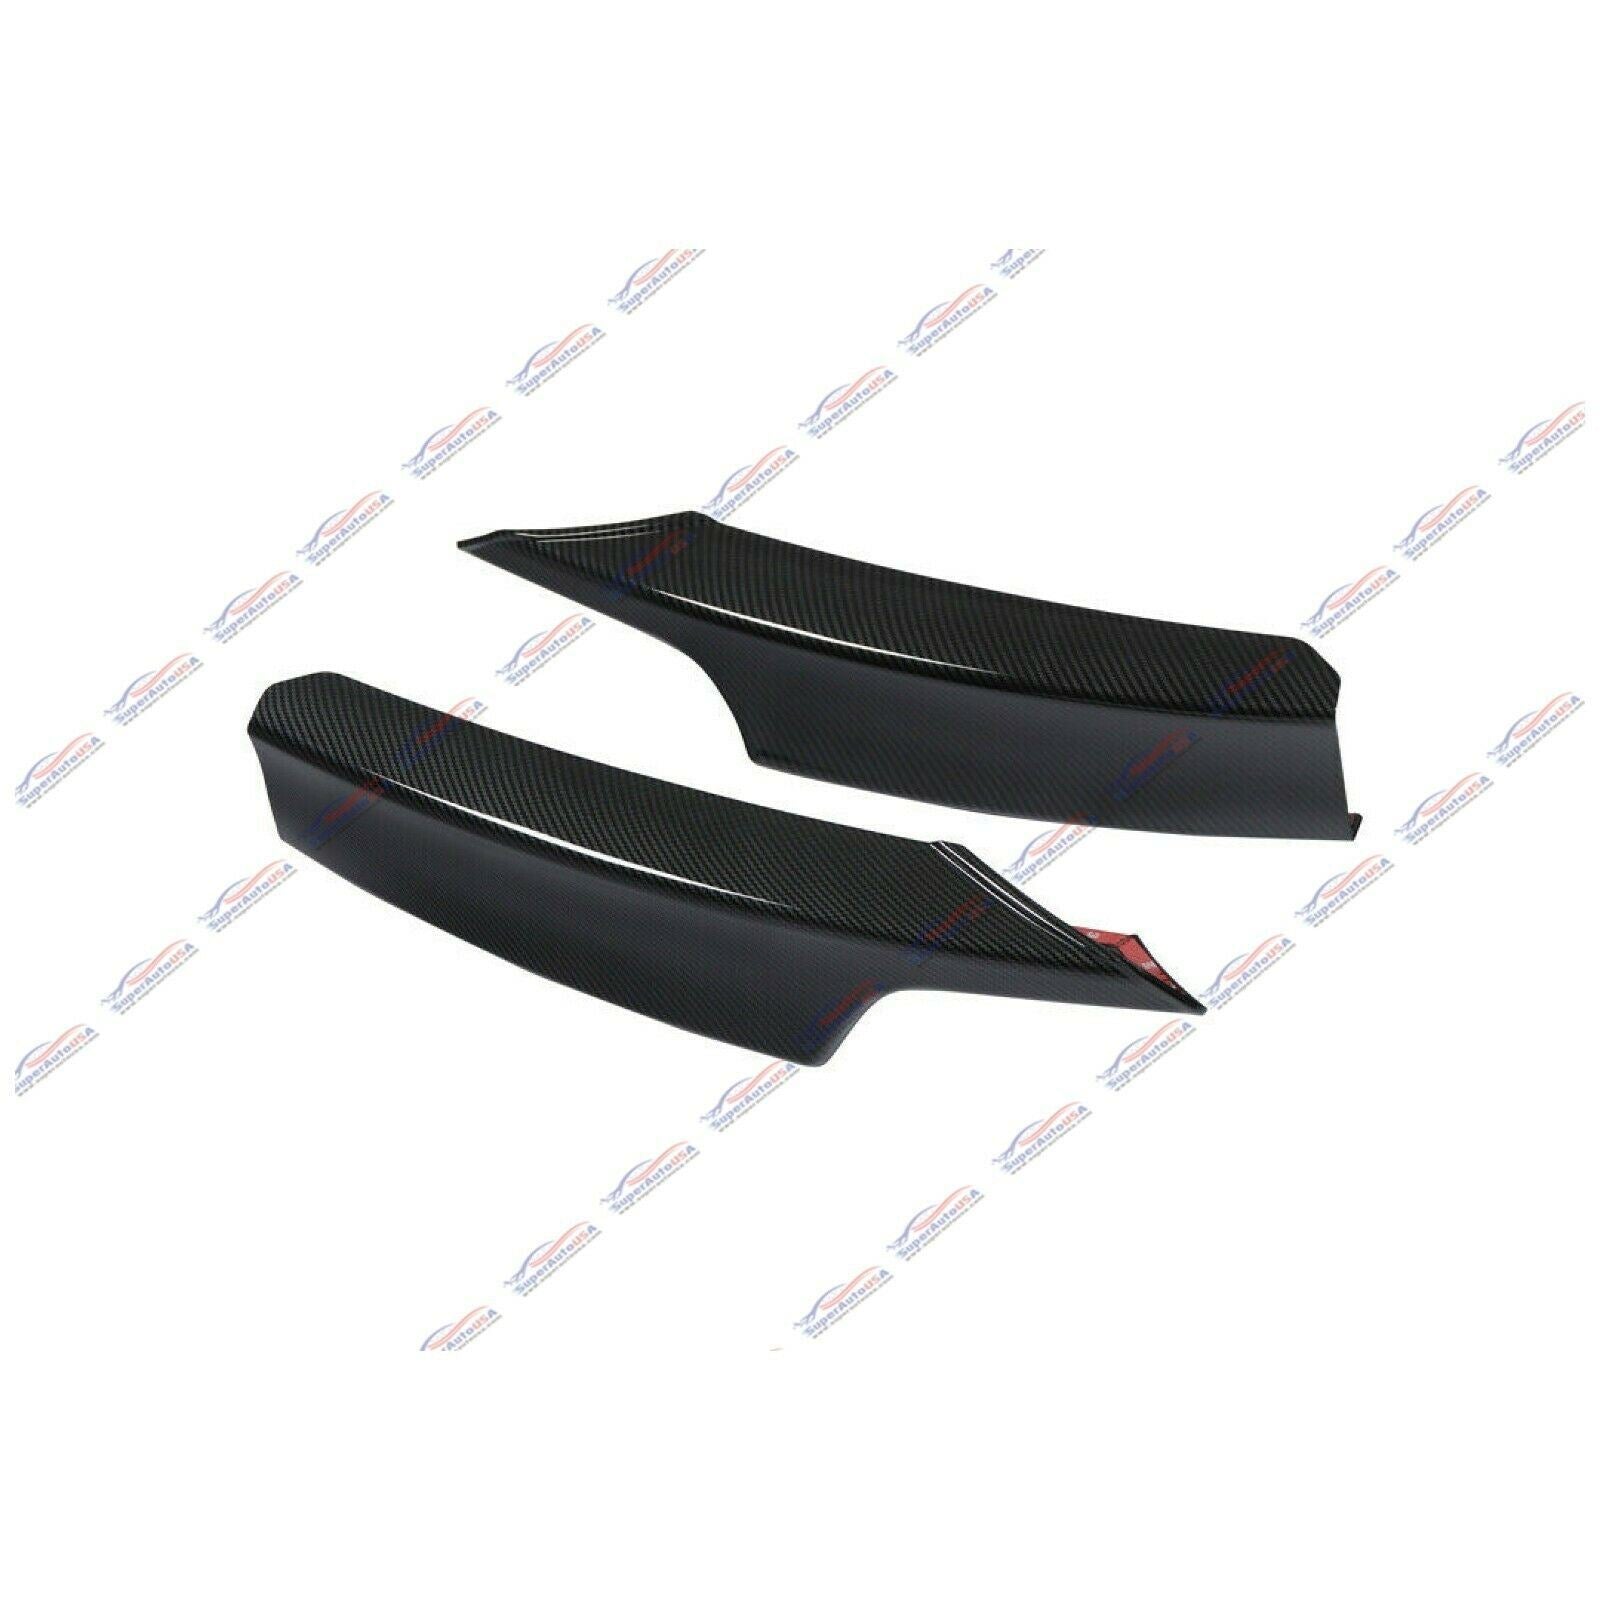 Compatible con divisores de esquina de labios delanteros BMW Serie 3 F30 M-Sport 2012-2018 (impresión de fibra de carbono).-4